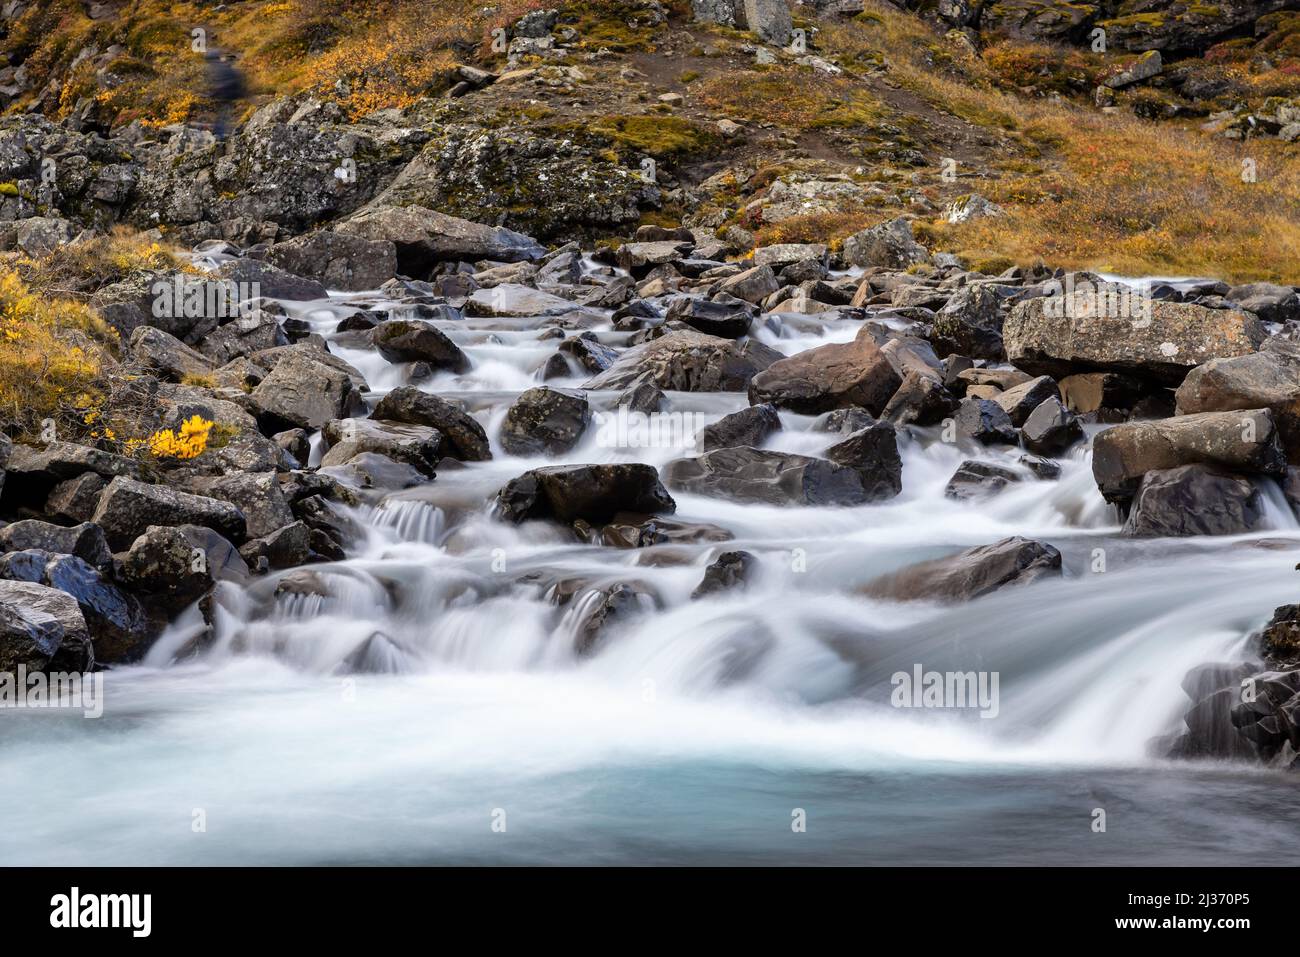 Détail de la cascade de Foladafoss dans les fjords de l'est, en Islande. Une longue exposition a été filmée sur l'eau glacée à l'automne, en train de s'extuber au-dessus des roches volcaniques. Banque D'Images